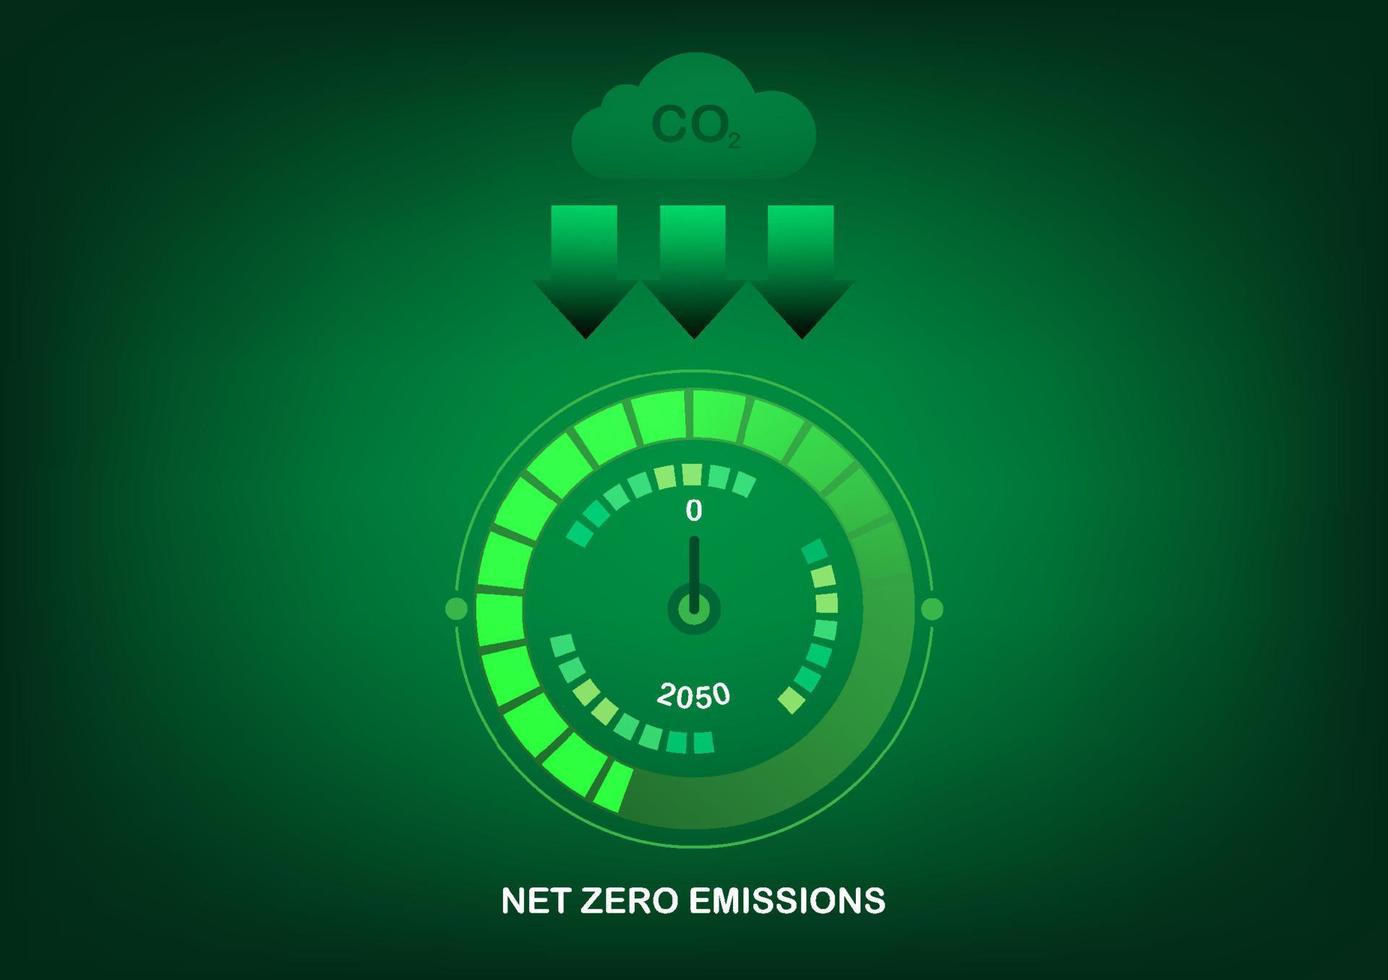 Netz Null Emission Politik durch 2050. vektor